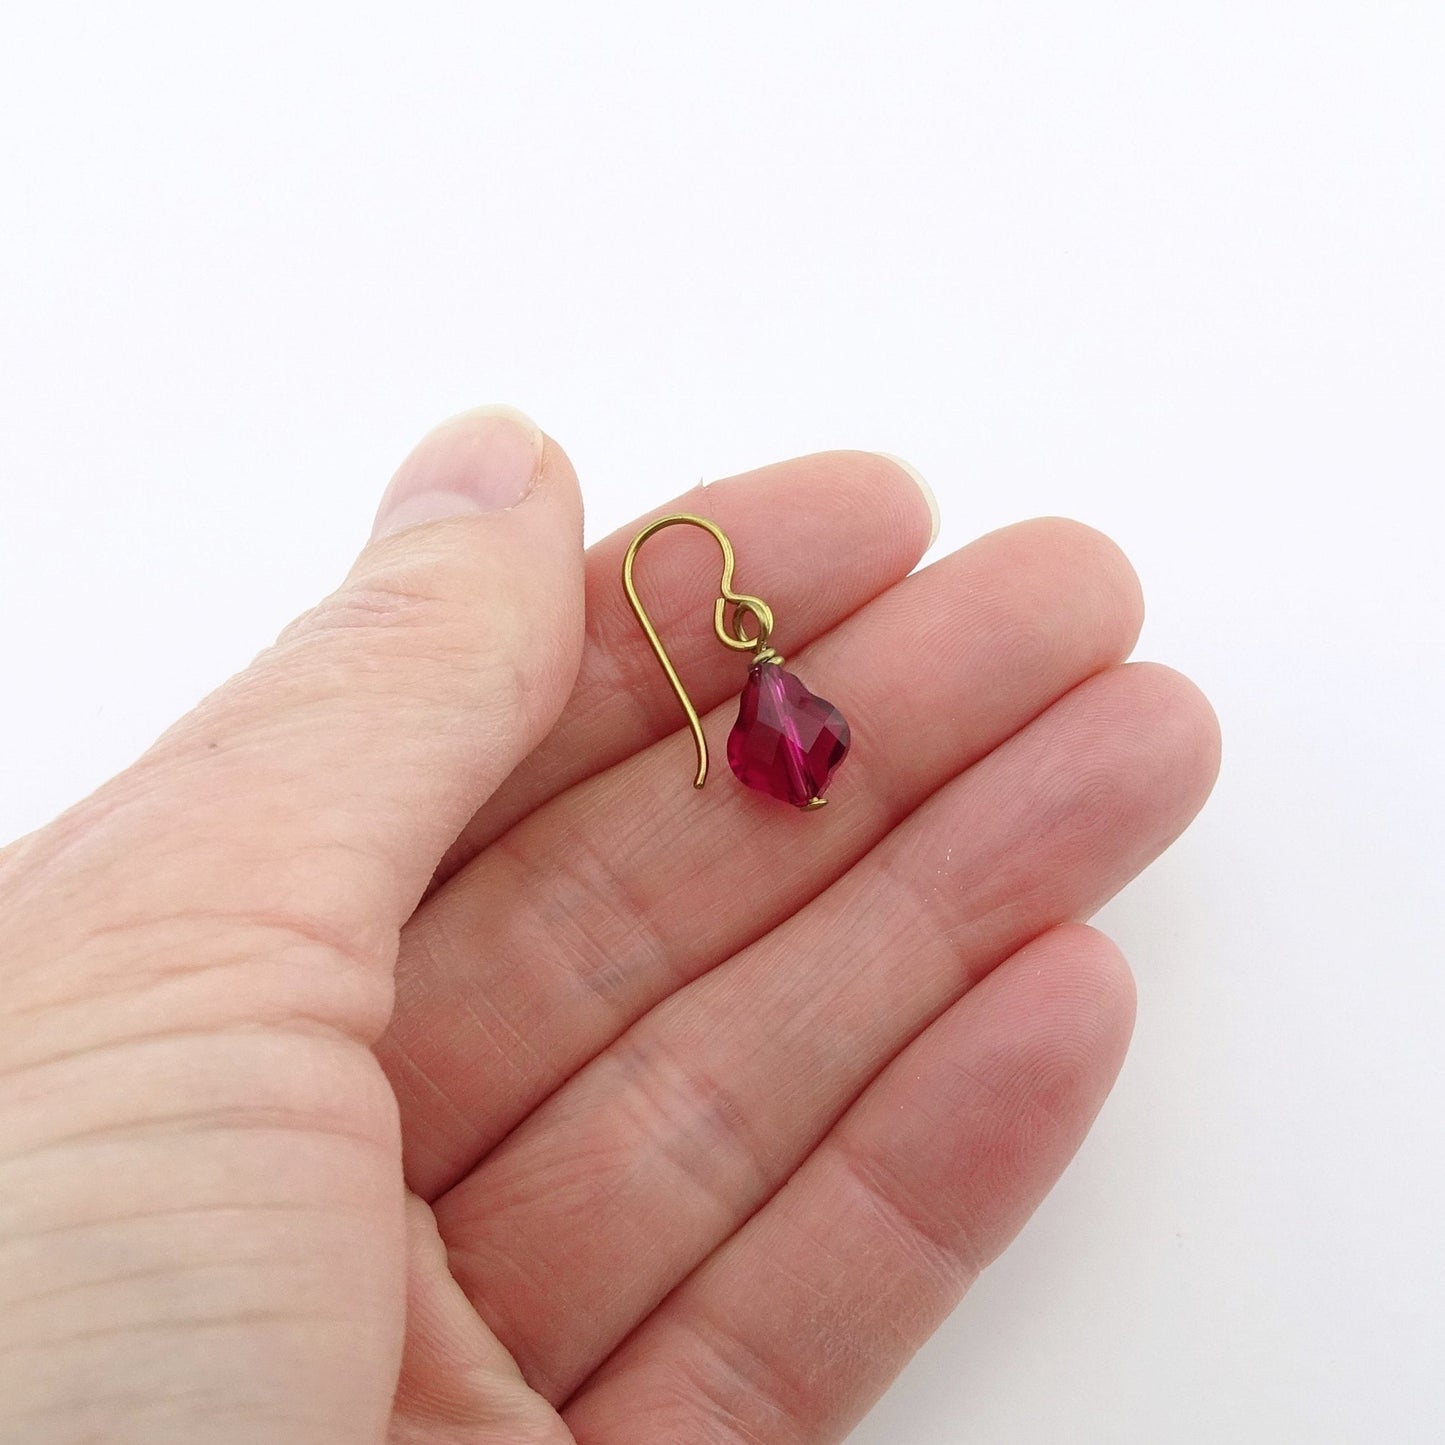 Ruby Baroque Crystal Earrings, Gold Niobium Earrings, Red Pink Swarovski Crystal, Hypoallergenic Nickel Free Earrings for Sensitive Ears